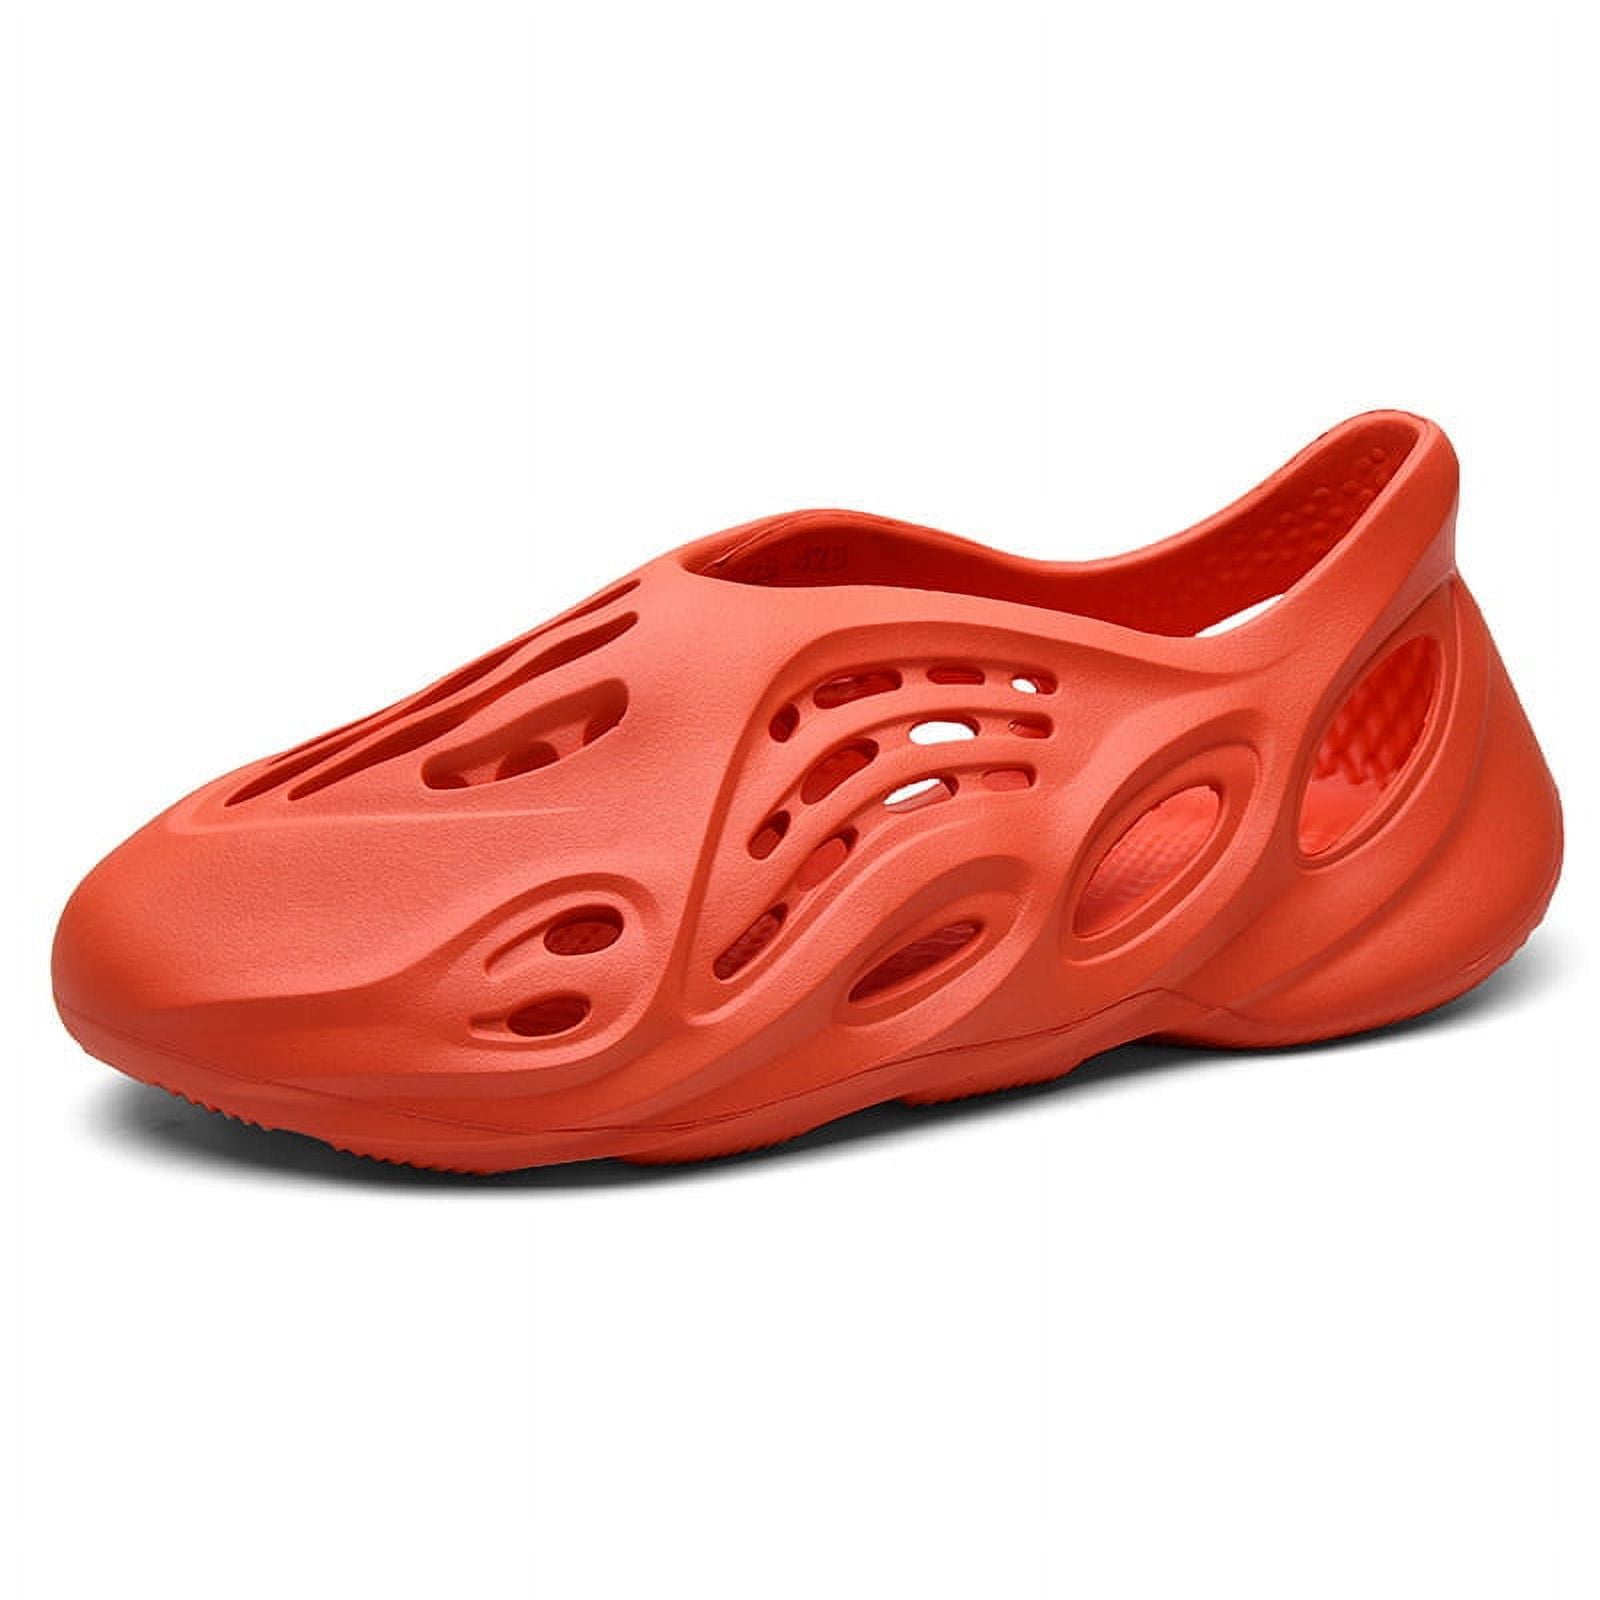 Yeezy Like Foam Runner Multi Color Red Orange Beige / Men 7/7.5 (40/41)